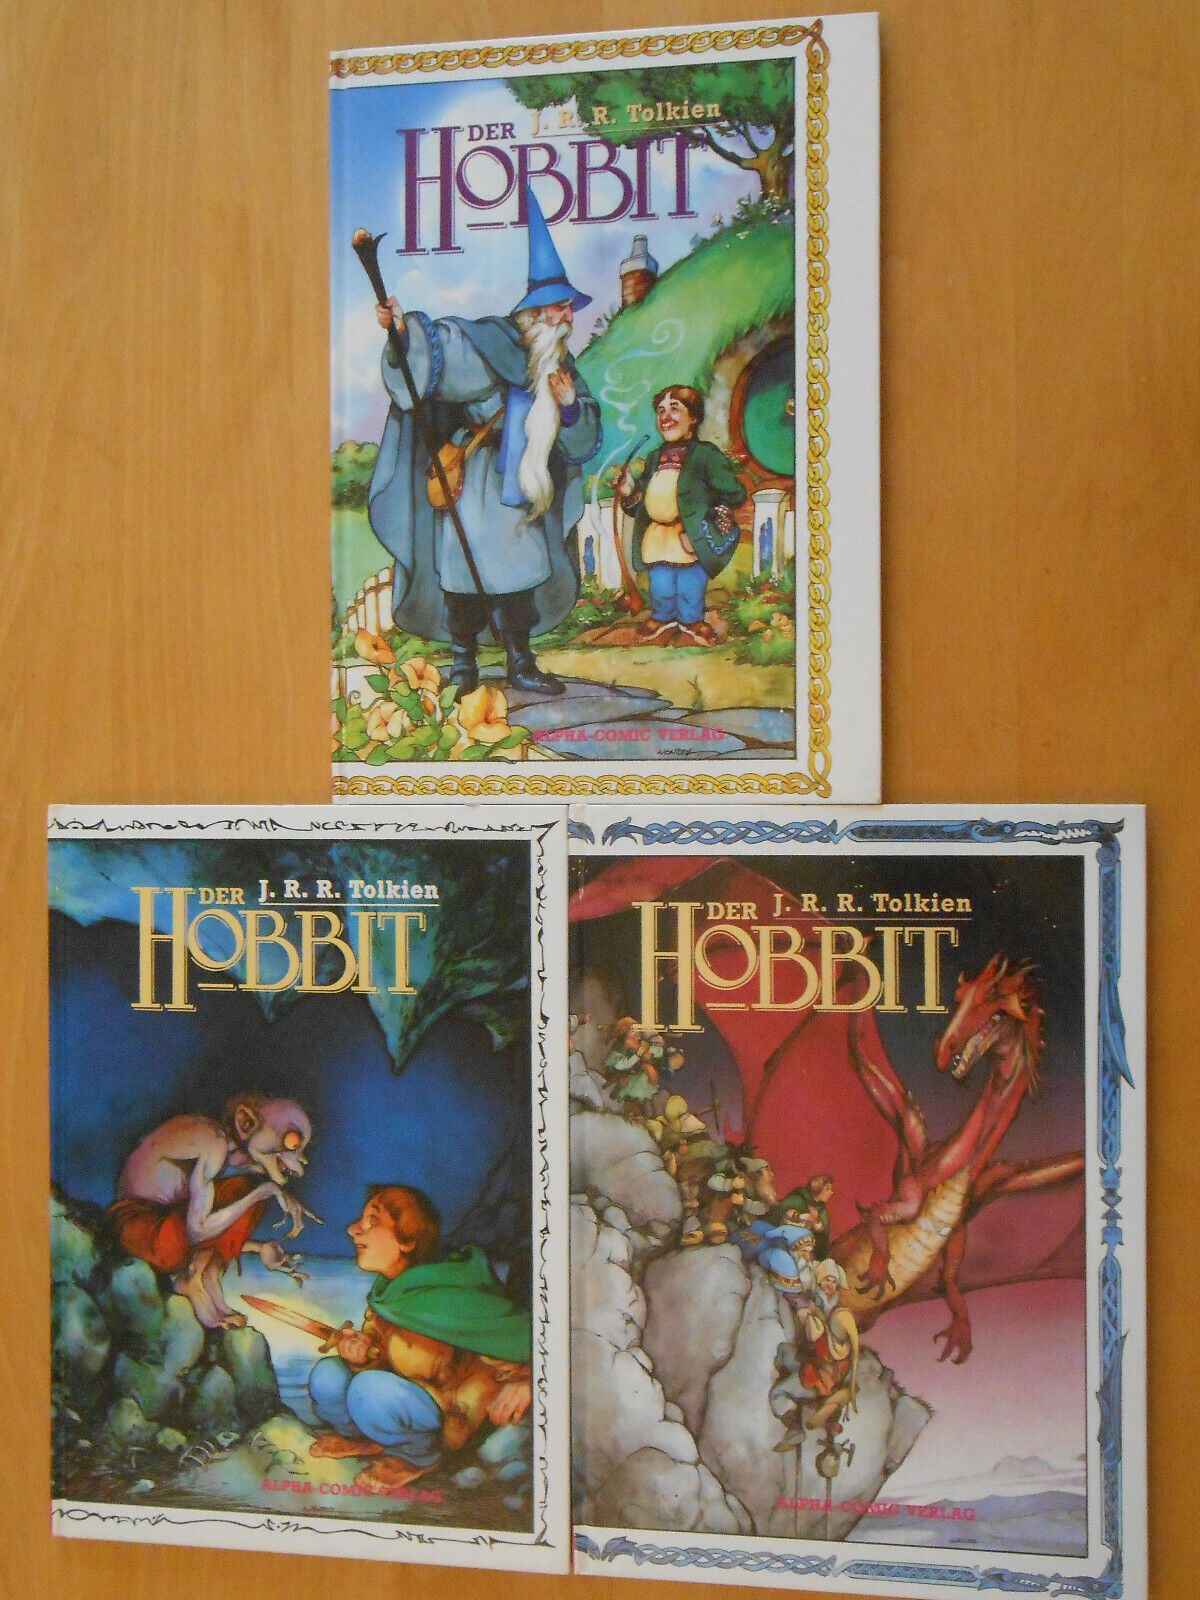 Der Hobbit Alpha Comic 3 Bände Band 1, 2, 3, Tolkien Dixon Wenzel Hardcover